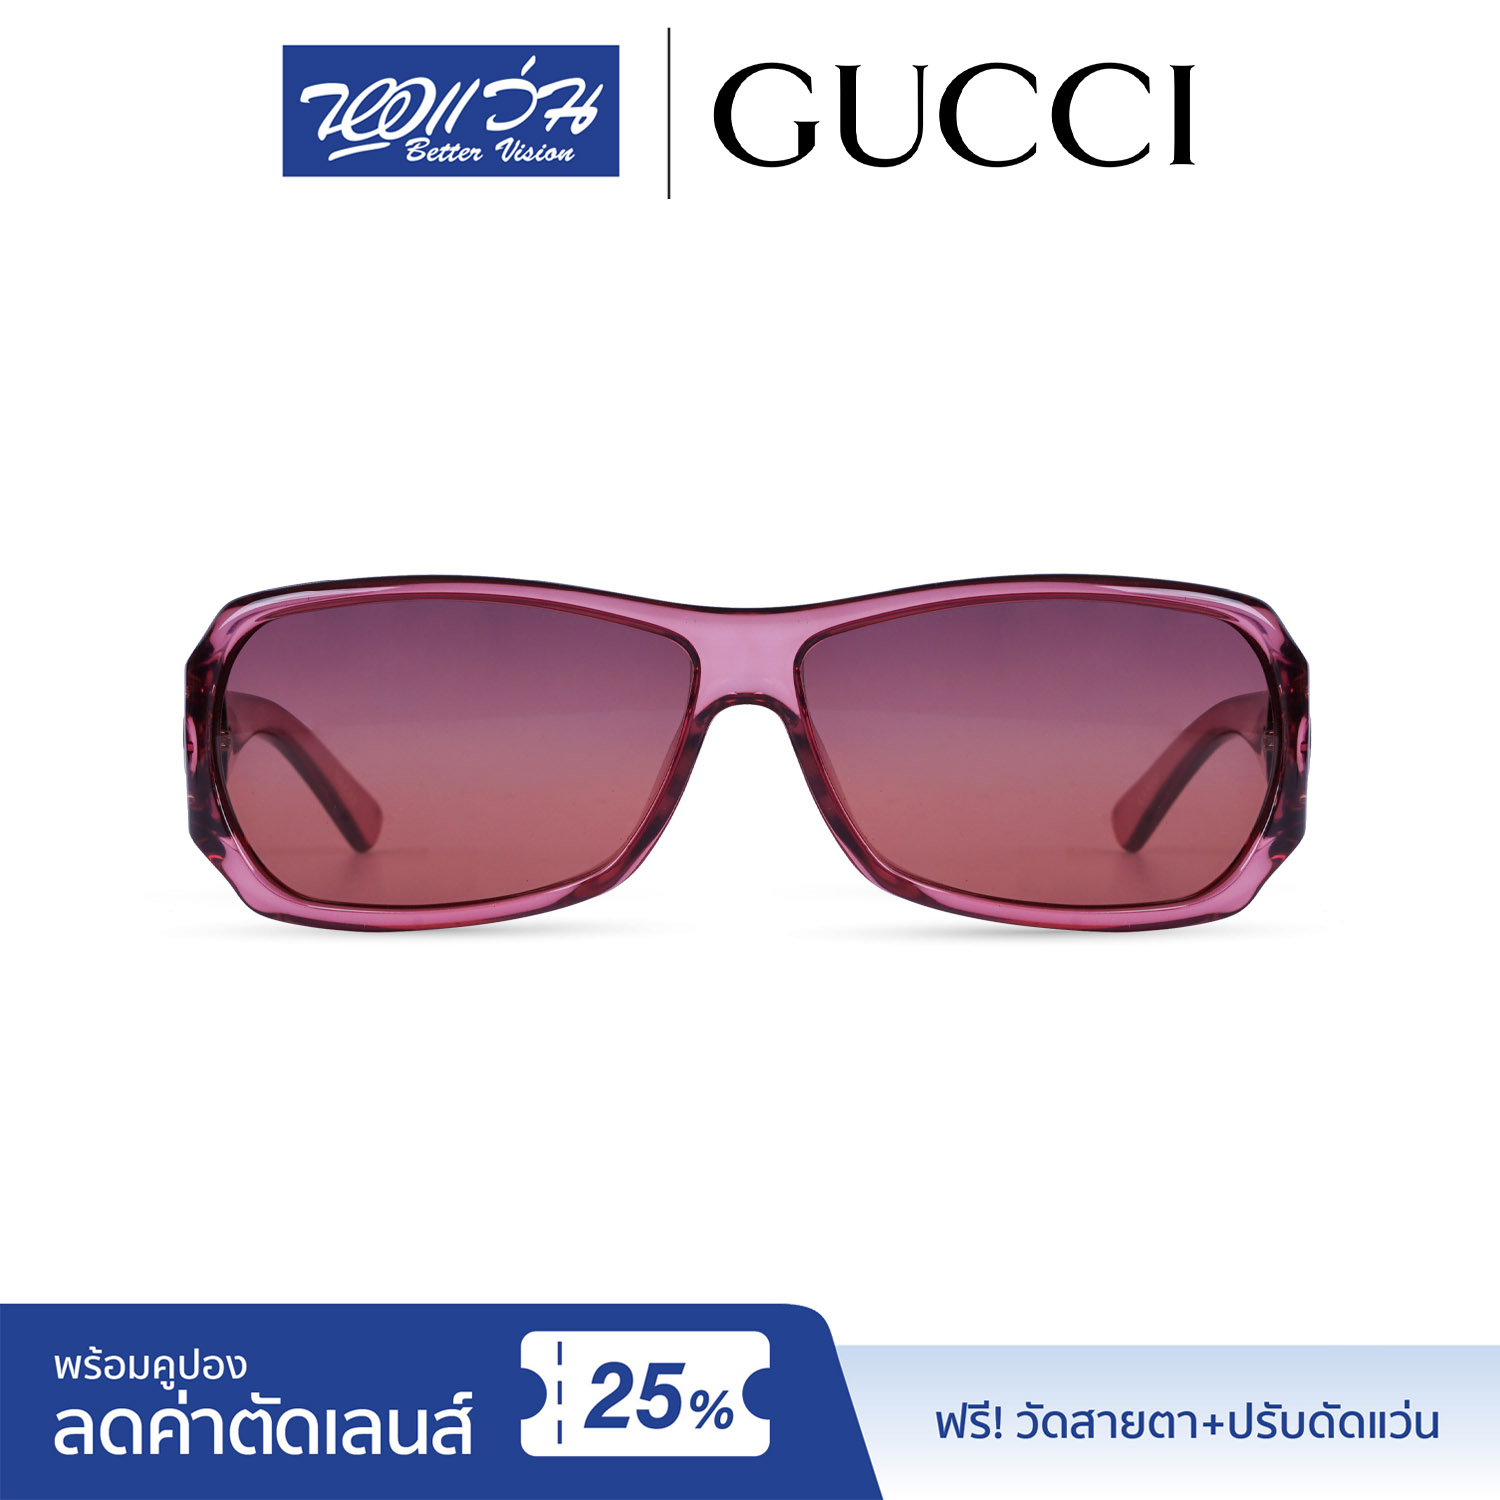 แว่นกันแดด กุชชี่ Gucci Sunglasses  แถมฟรีส่วนลดค่าตัดเลนส์ 25% free 25% lens discount รุ่น FGC2574